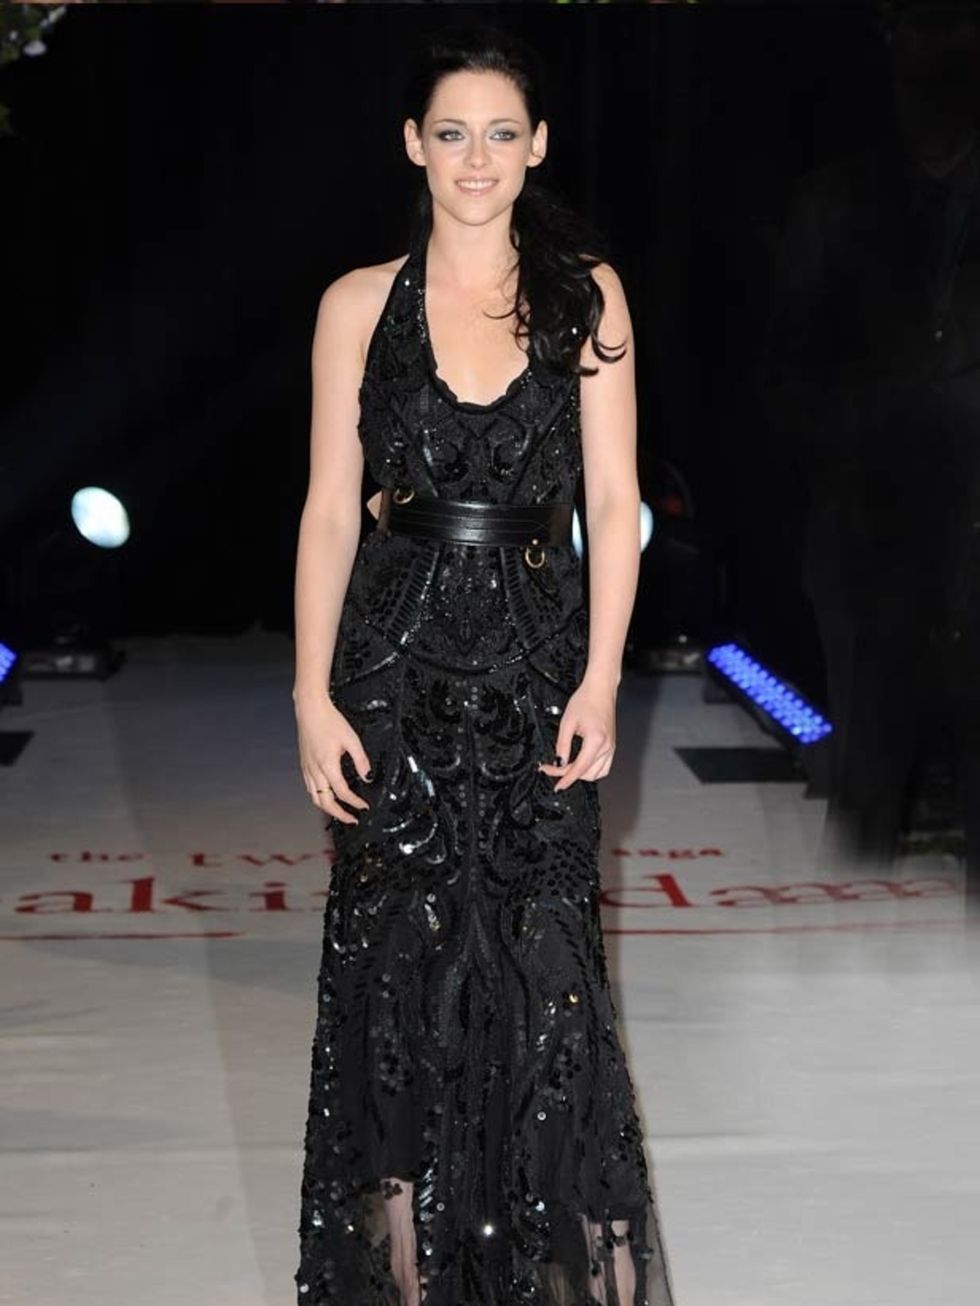 <p><a href="http://www.elleuk.com/starstyle/style-files/(section)/kristen-stewart">Kristen Stewart</a> wears a black lace <a href="http://www.elleuk.com/catwalk/collections/roberto-cavalli/">Roberto Cavalli</a> gown with an <a href="http://www.elleuk.com/